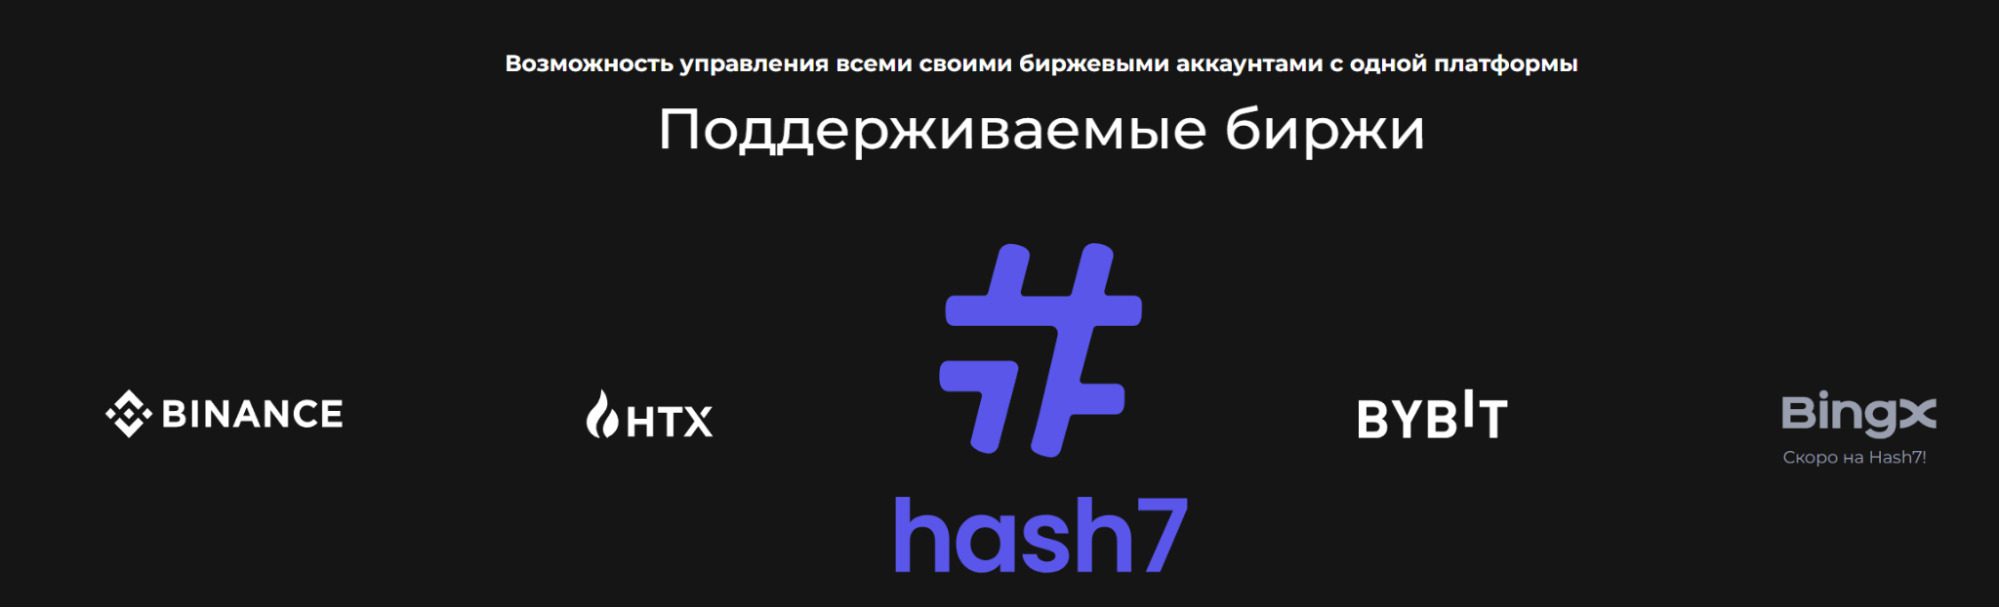 Сайт криптобота Hash7